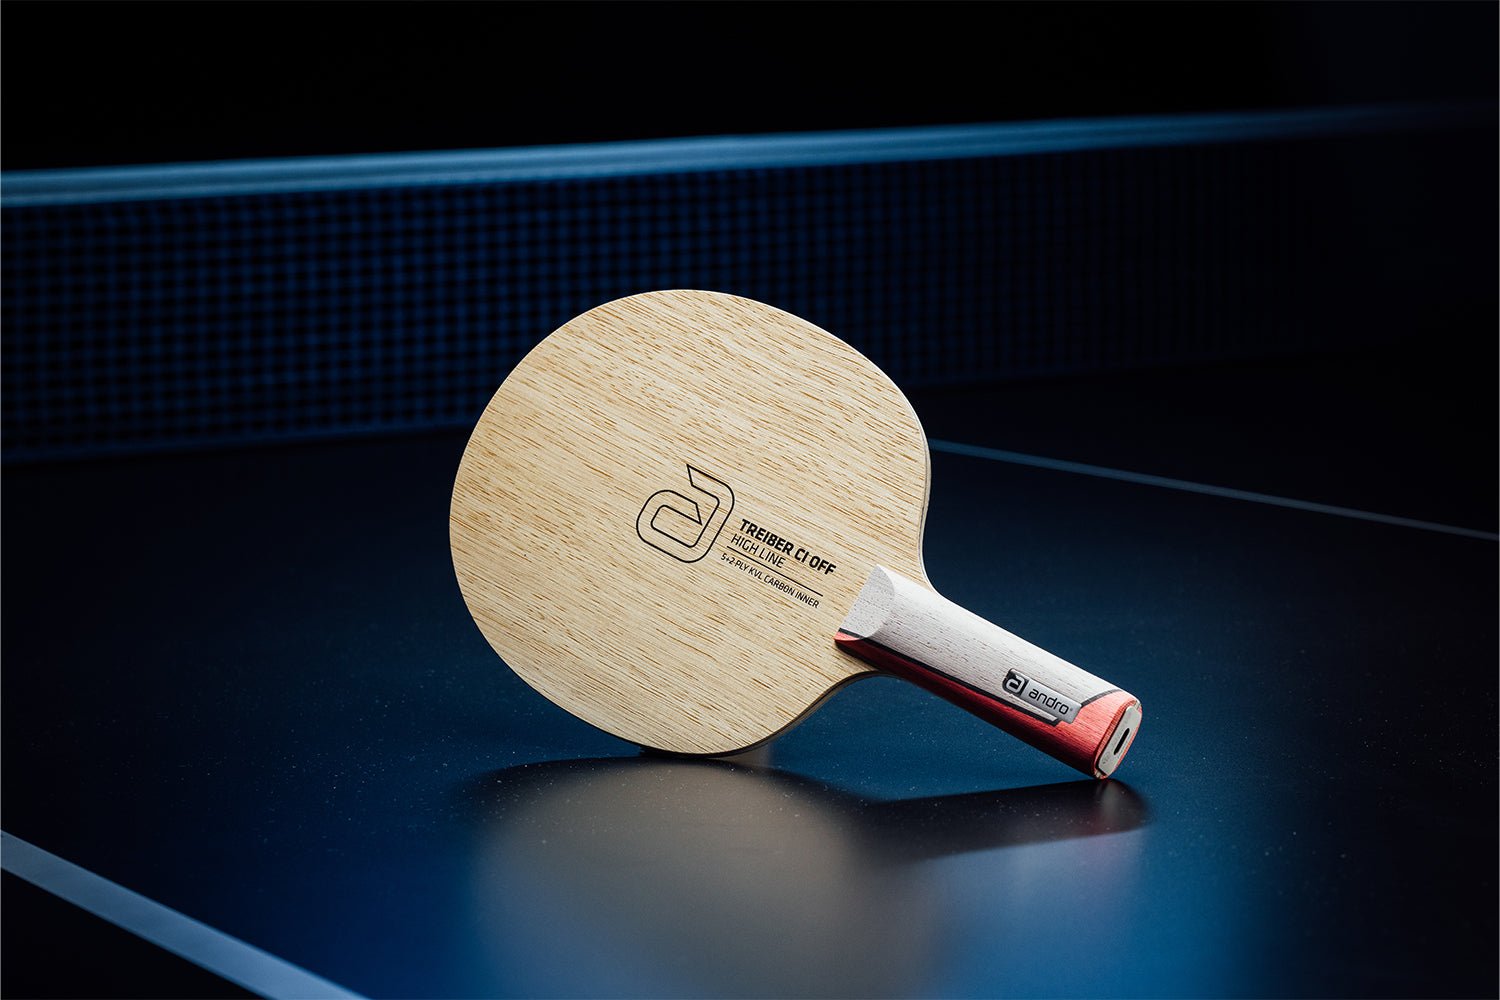 Stehender andro Treiber CI OFF Tischtennisschläger mit geradem Griff, Janova Sensor, USB-C-Buchse auf Tischtennistisch